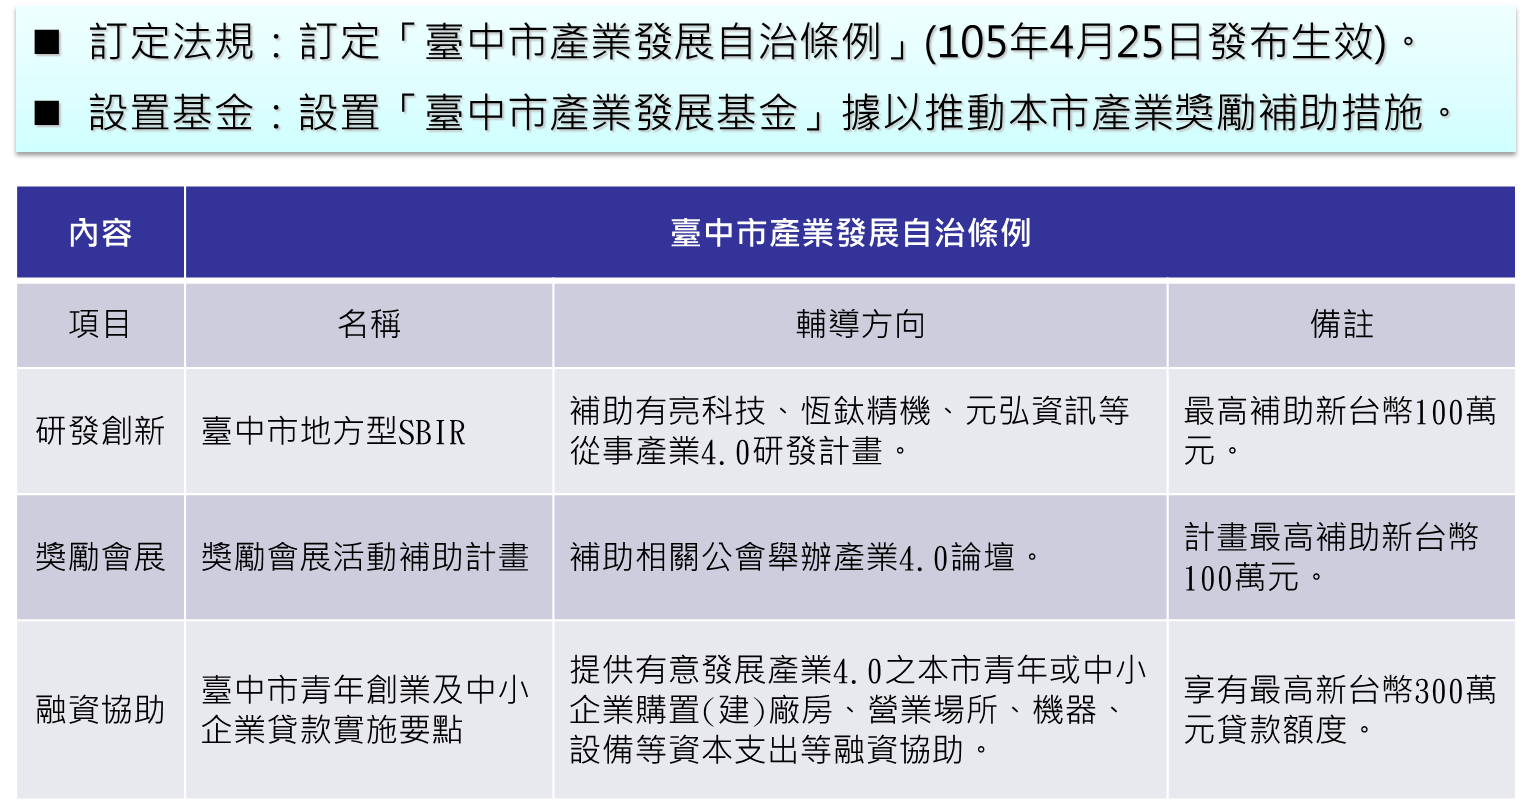 臺中市產業發展自治條例